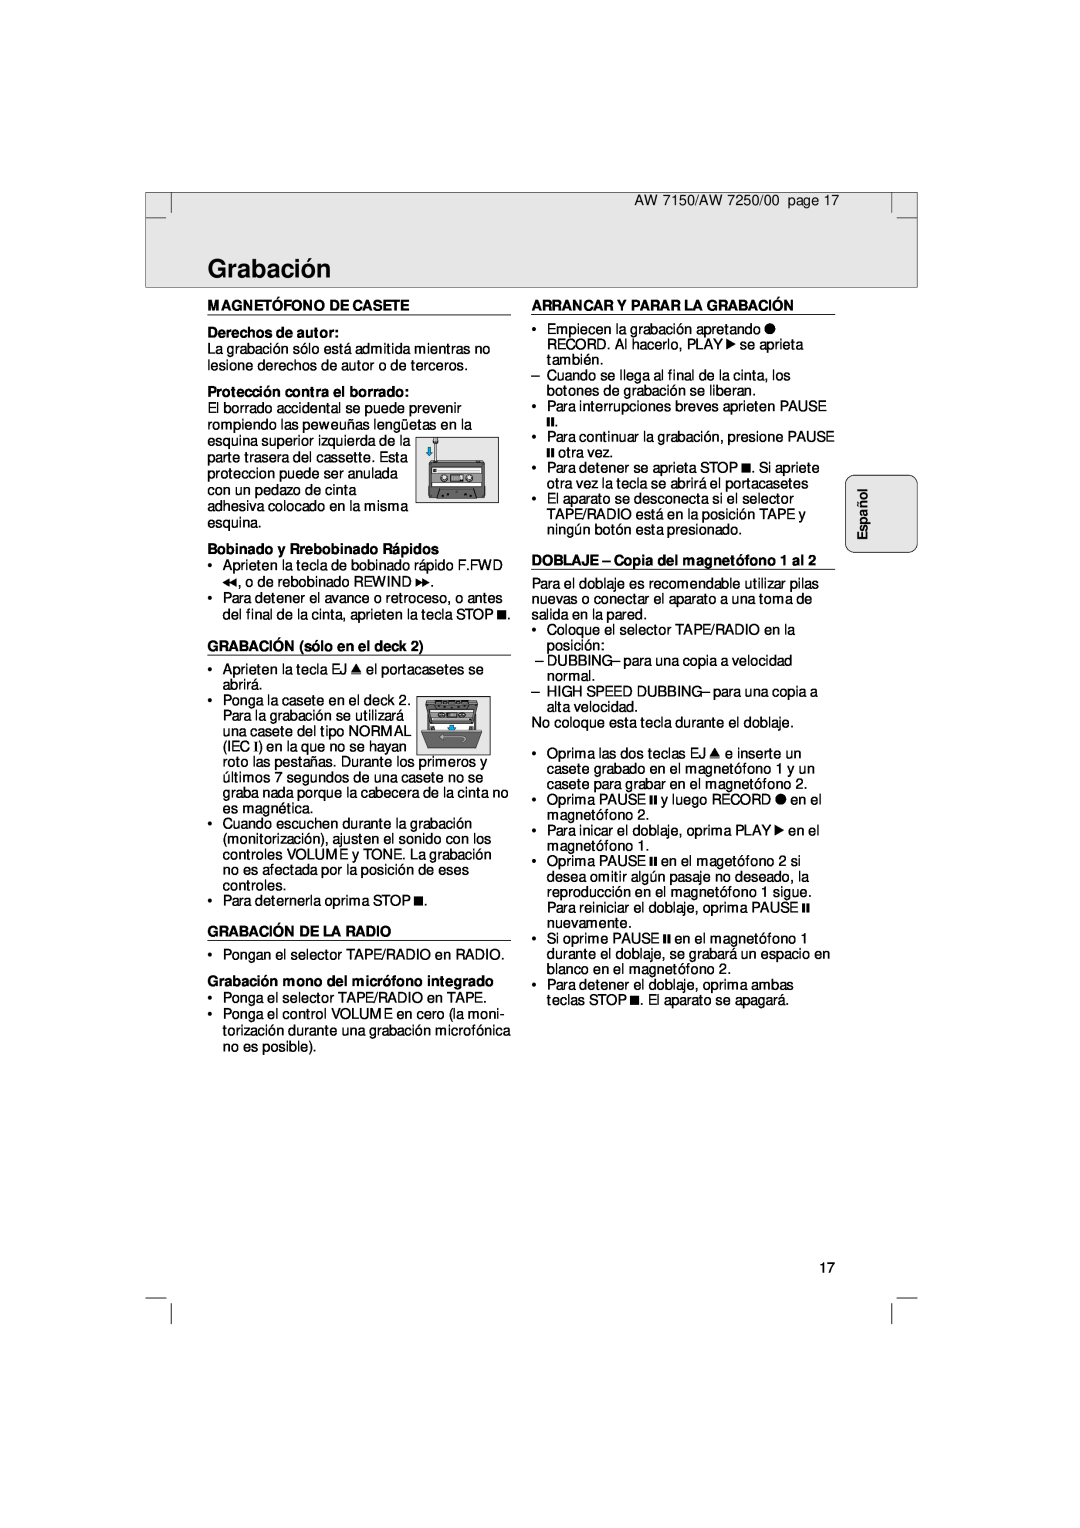 Philips AW 7250/04S, AW 7150/04S Grabación, Español, MAGNETÓFONO DE CASETE Derechos de autor, Protección contra el borrado 